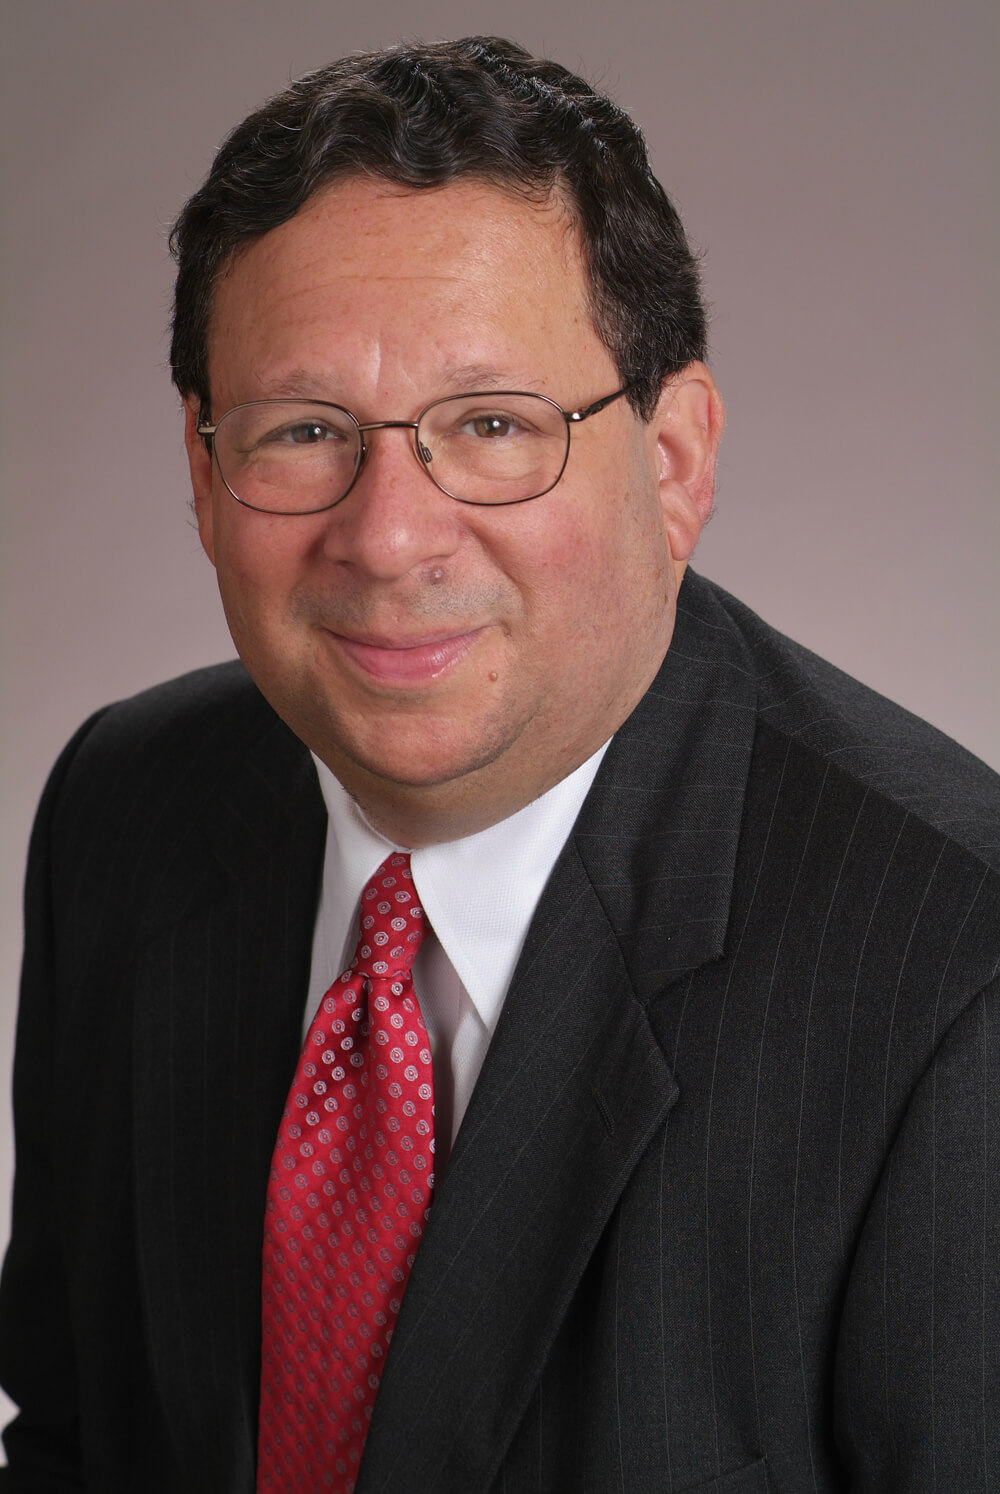 David L. Cohen